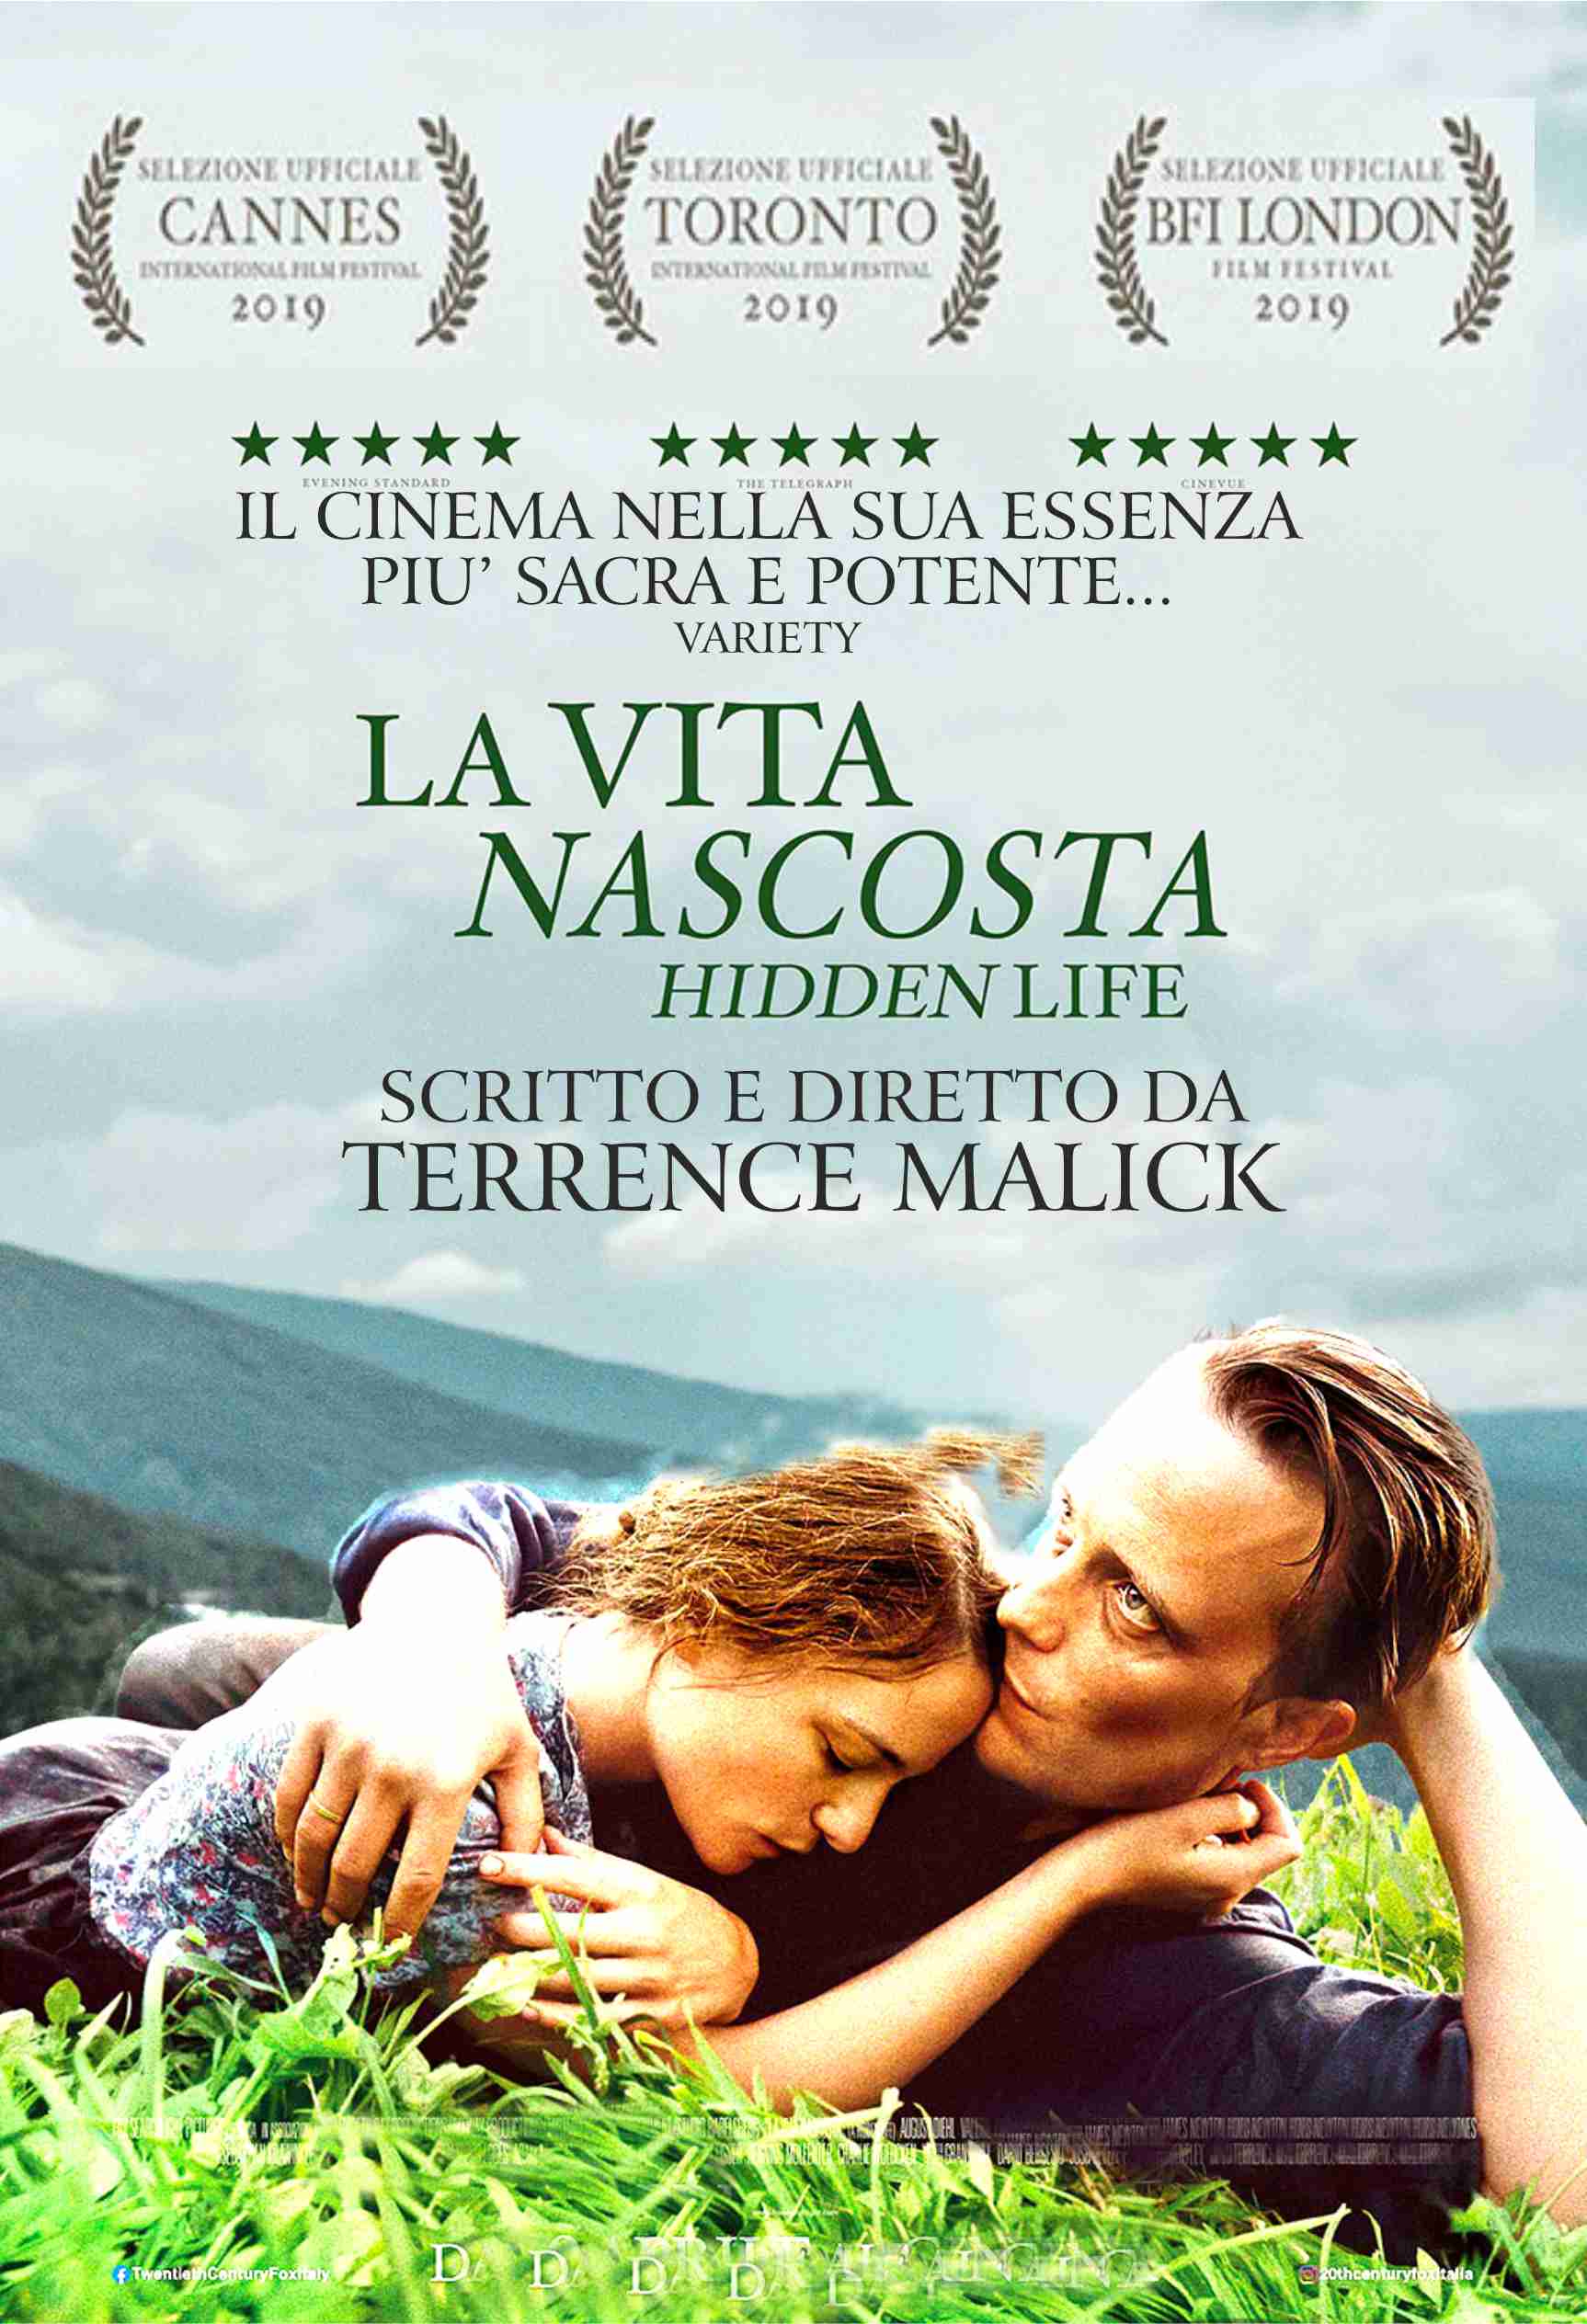 Triestecinema - I migliori film nei migliori cinema nel cuore della tua  città